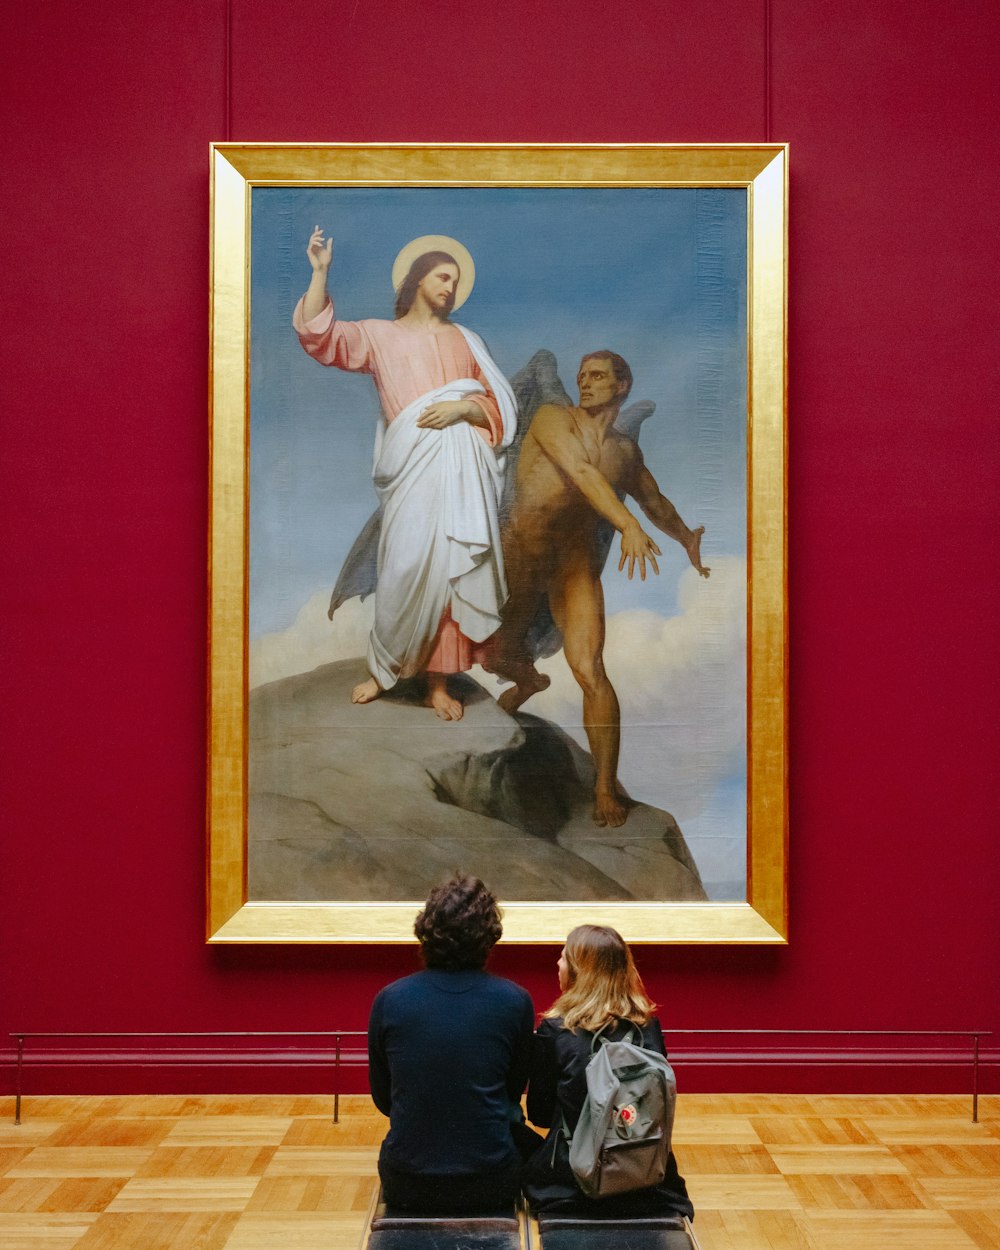 Mann und Frau sitzen vor dem Gemälde "Versuchungen Christi" von Botticelli